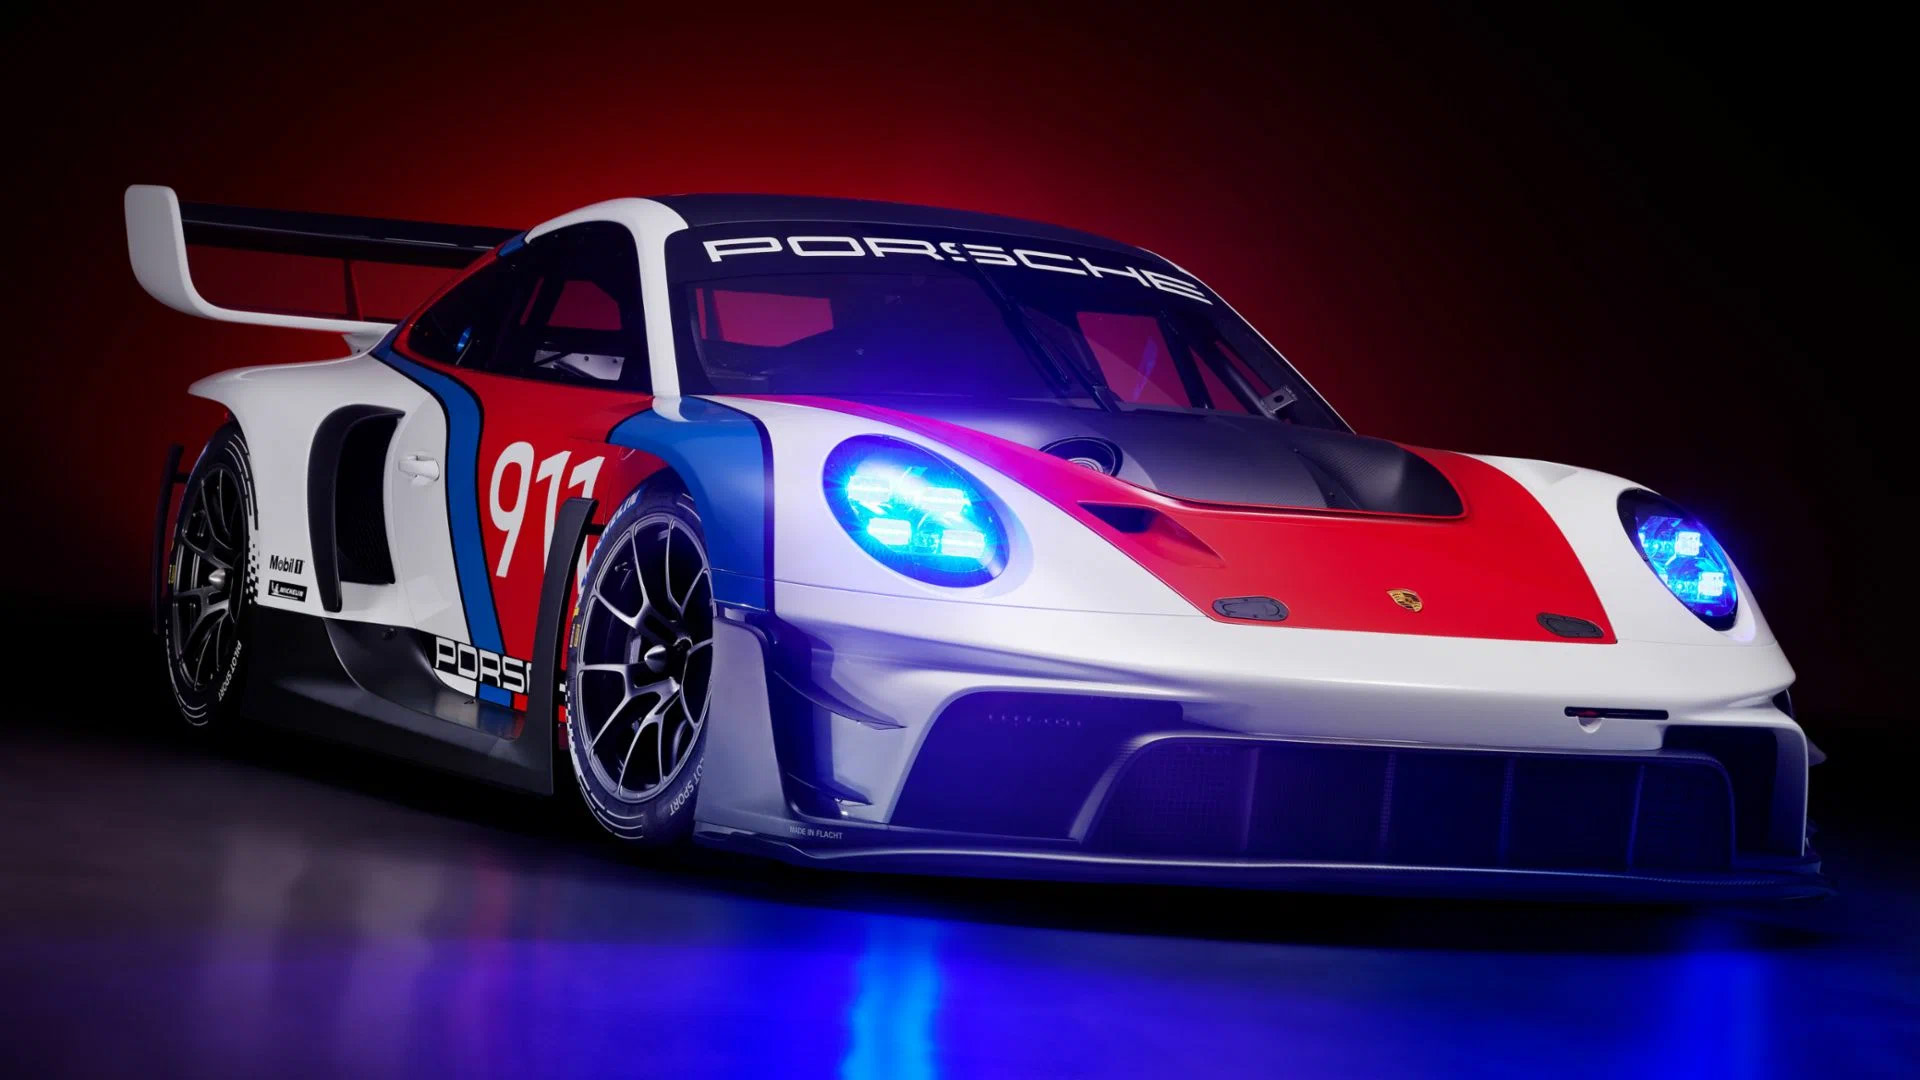 Представлен Porsche 911 GT3 R rennsport — спорткар за 1 миллион долларов,  на котором нельзя выезжать на